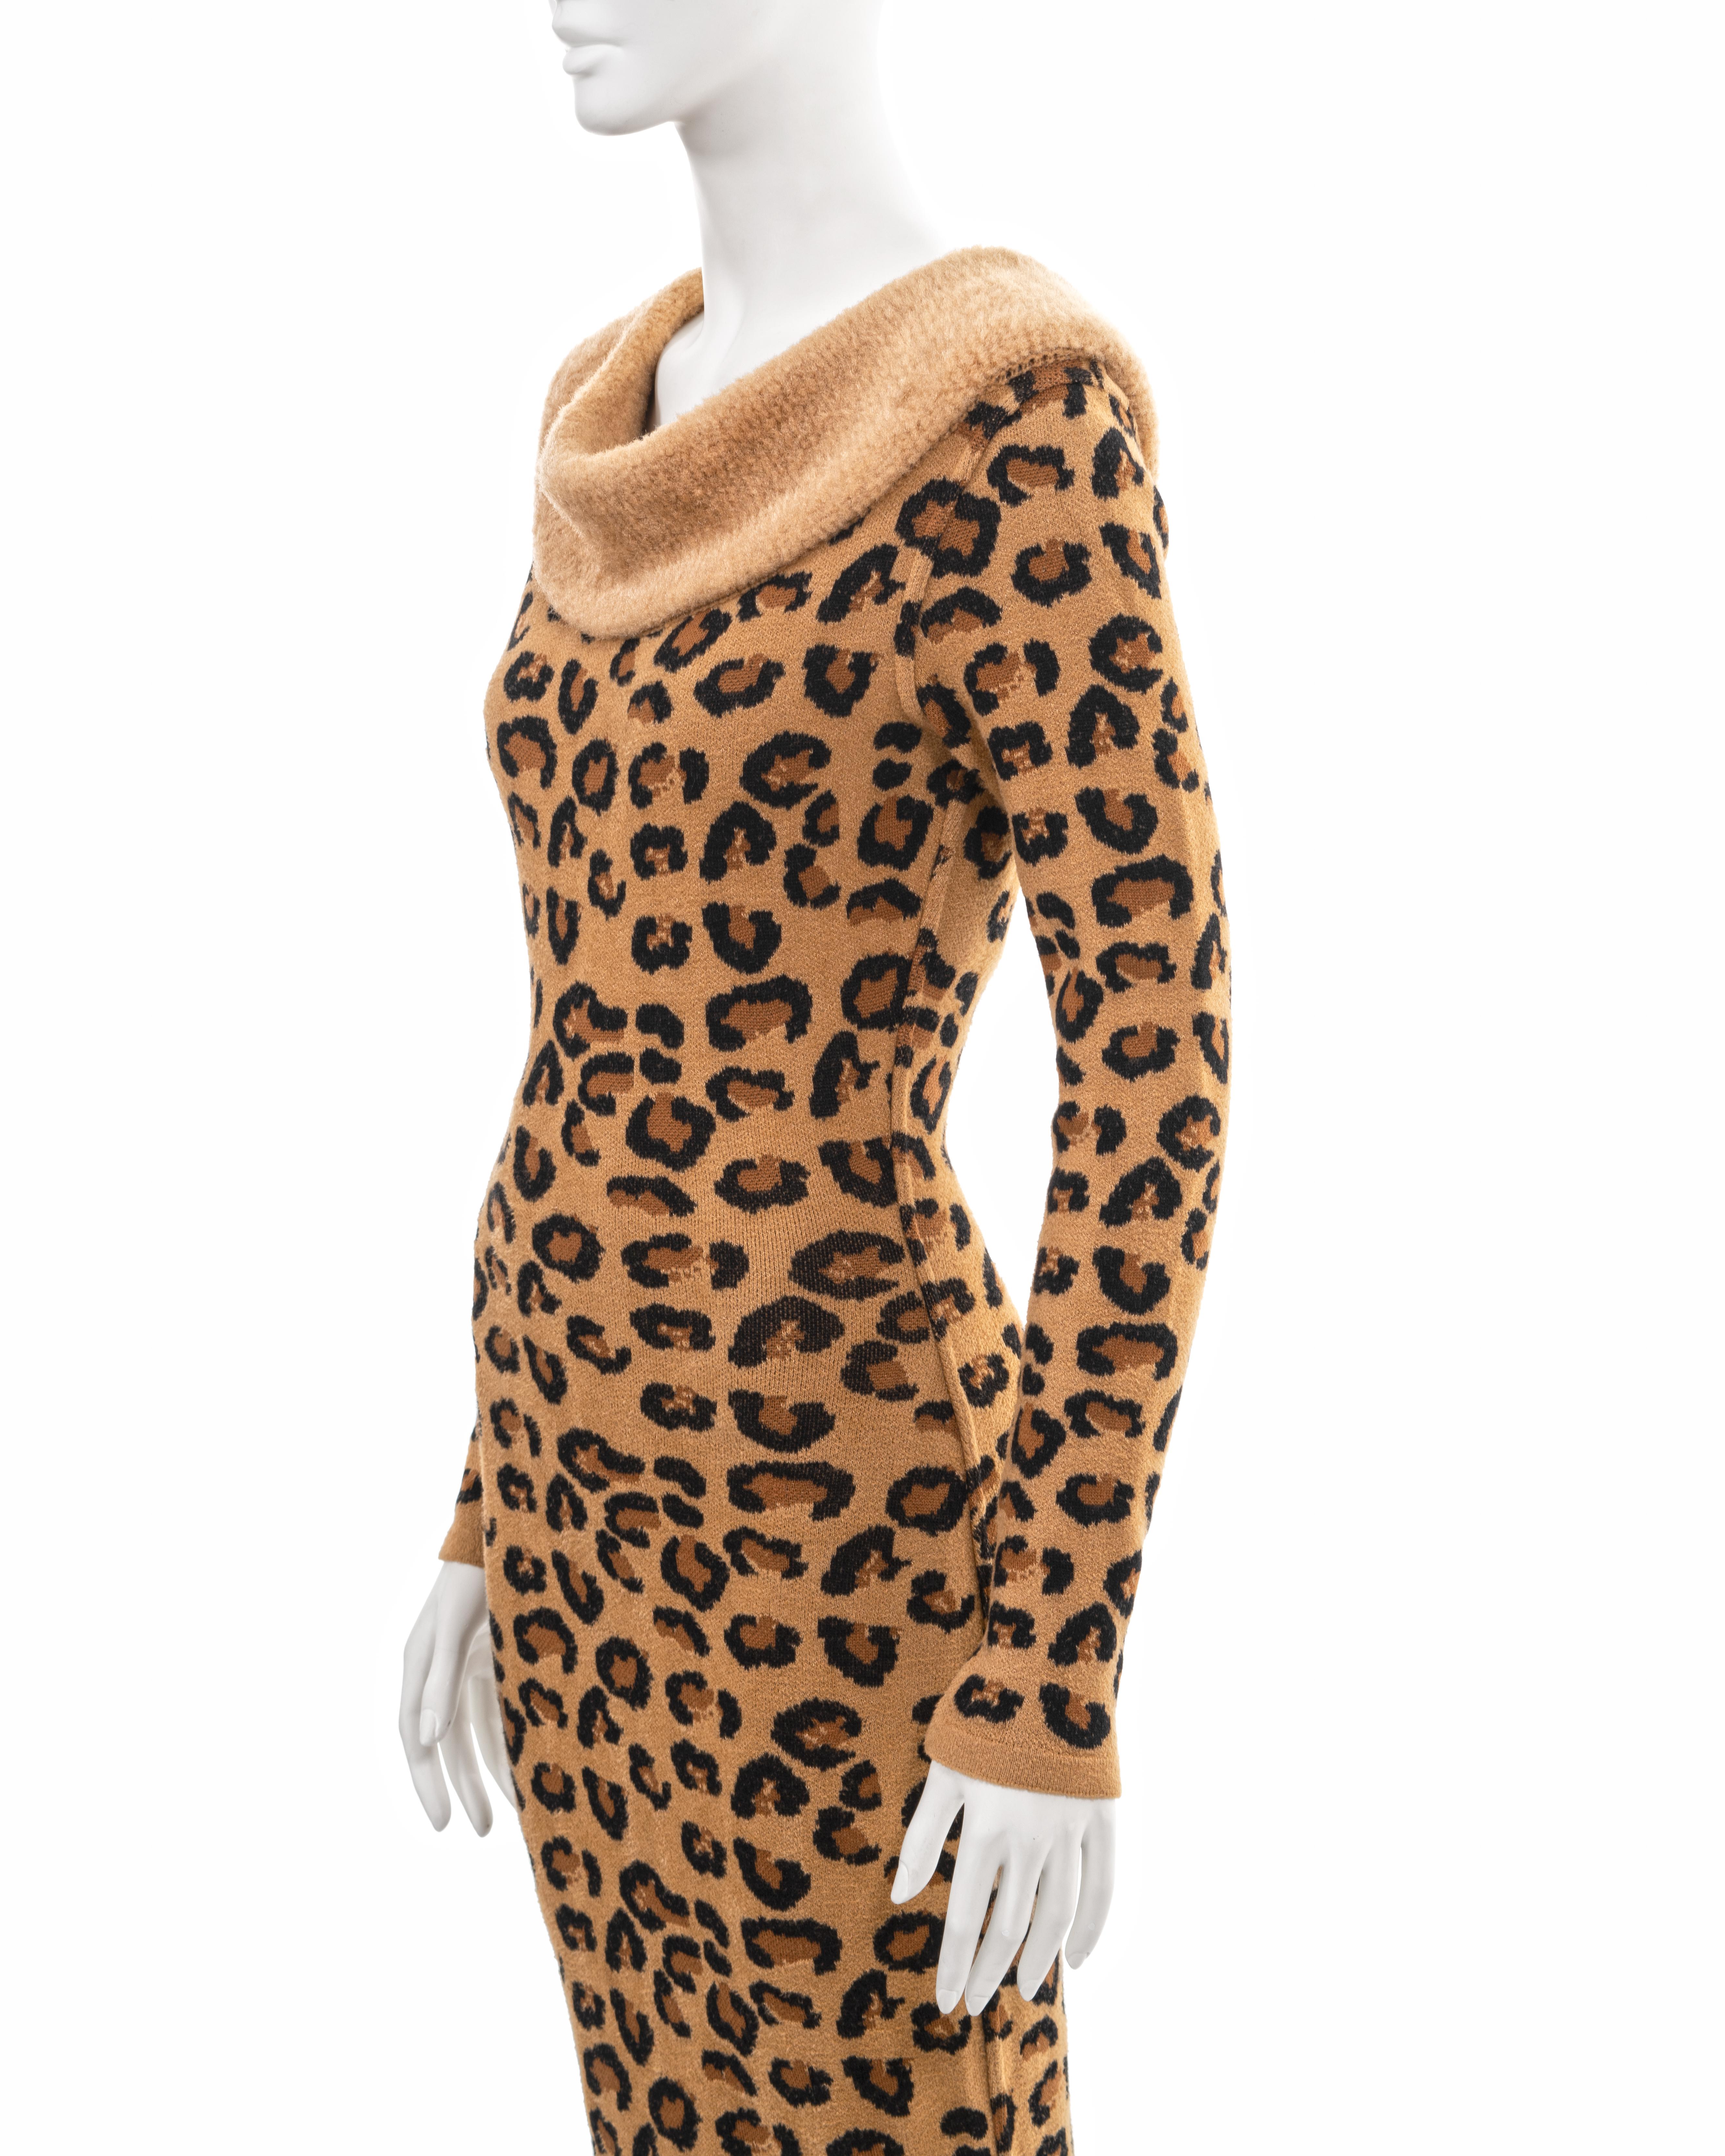 Azzedine Alaia leopard knit bateau-neck bodycon dress, fw 1991 11